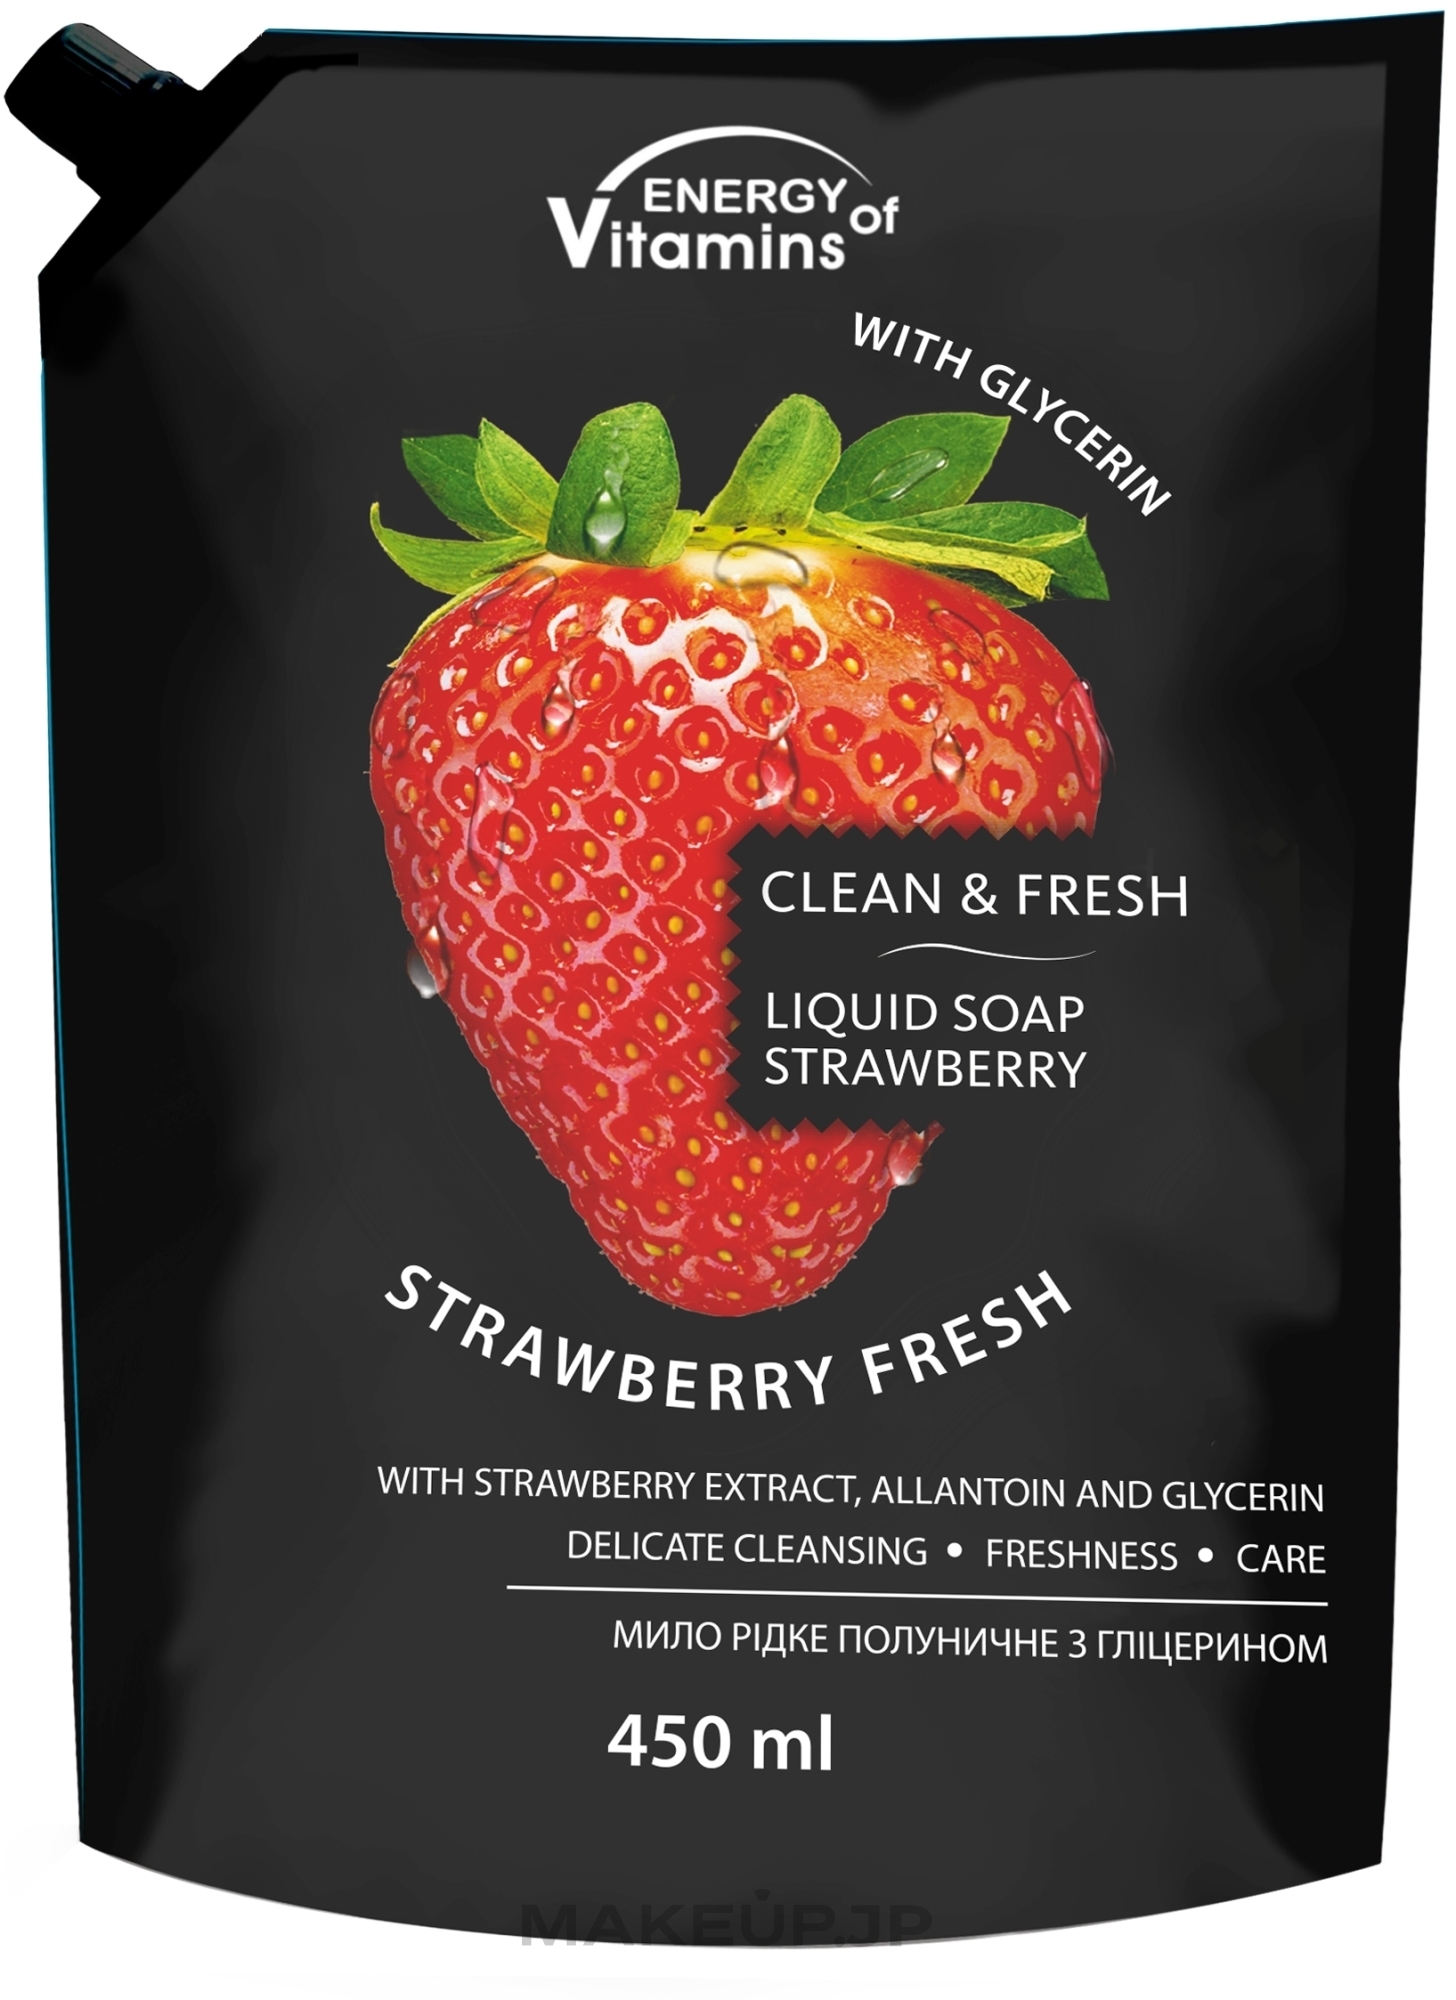 Strawberry Liquid Glycerin Soap - Vkusnyye Sekrety Energy of Vitamins (doypack) — photo 450 ml